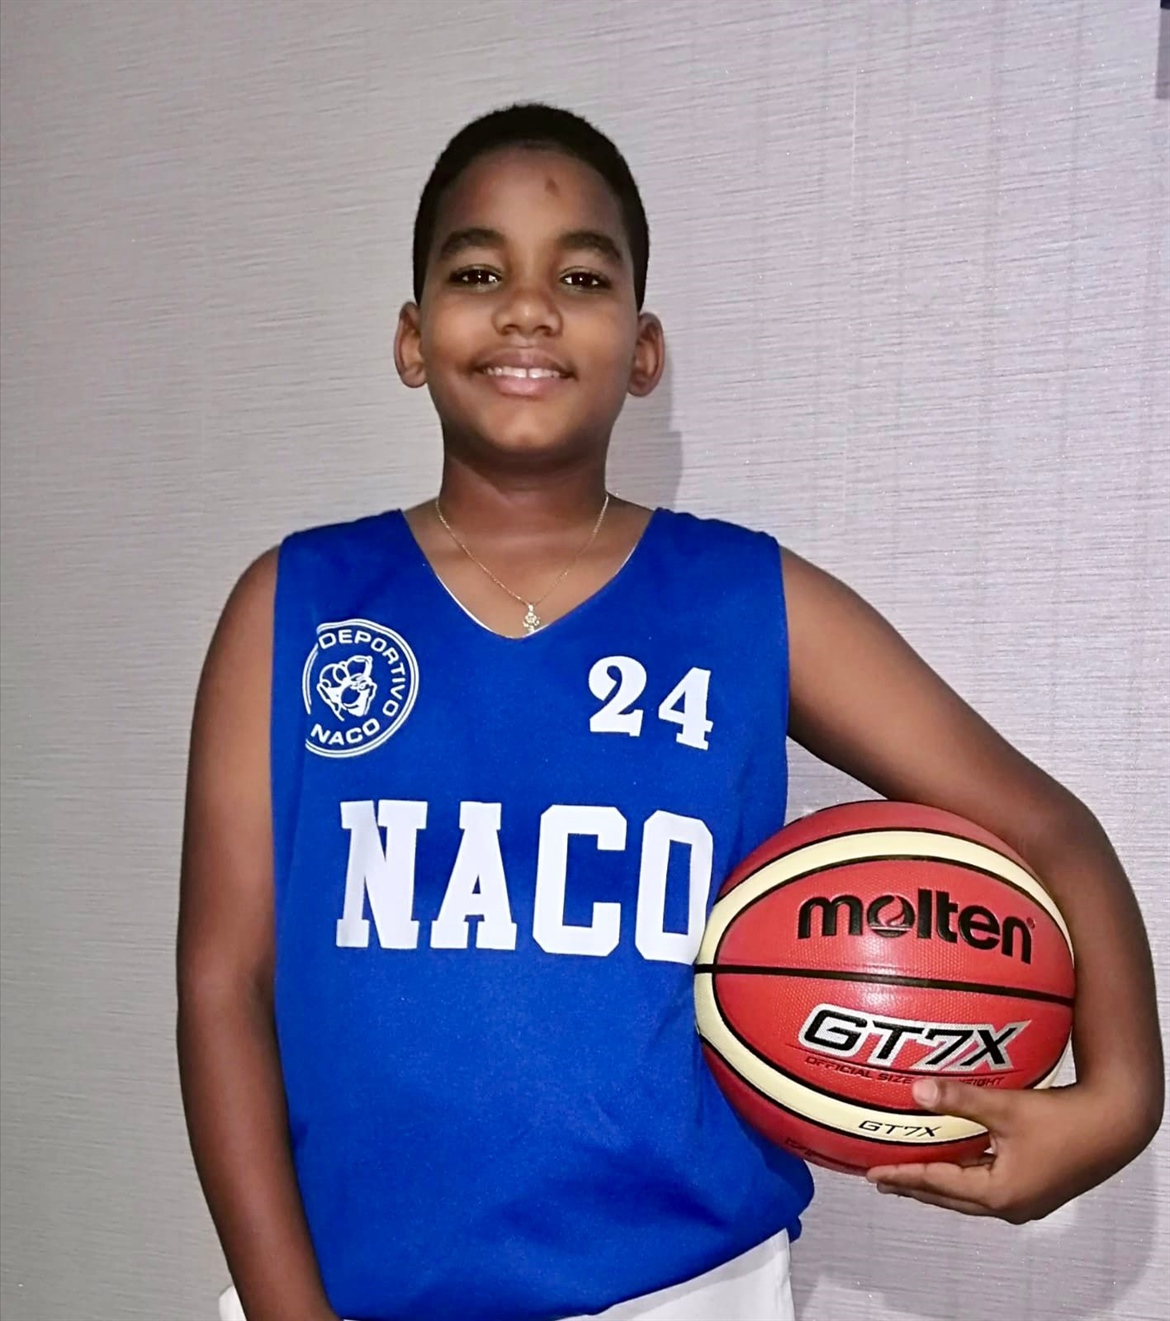 Evans Virgilio Matthew Cruz, Atleta del 2021 en Sub 11 Años